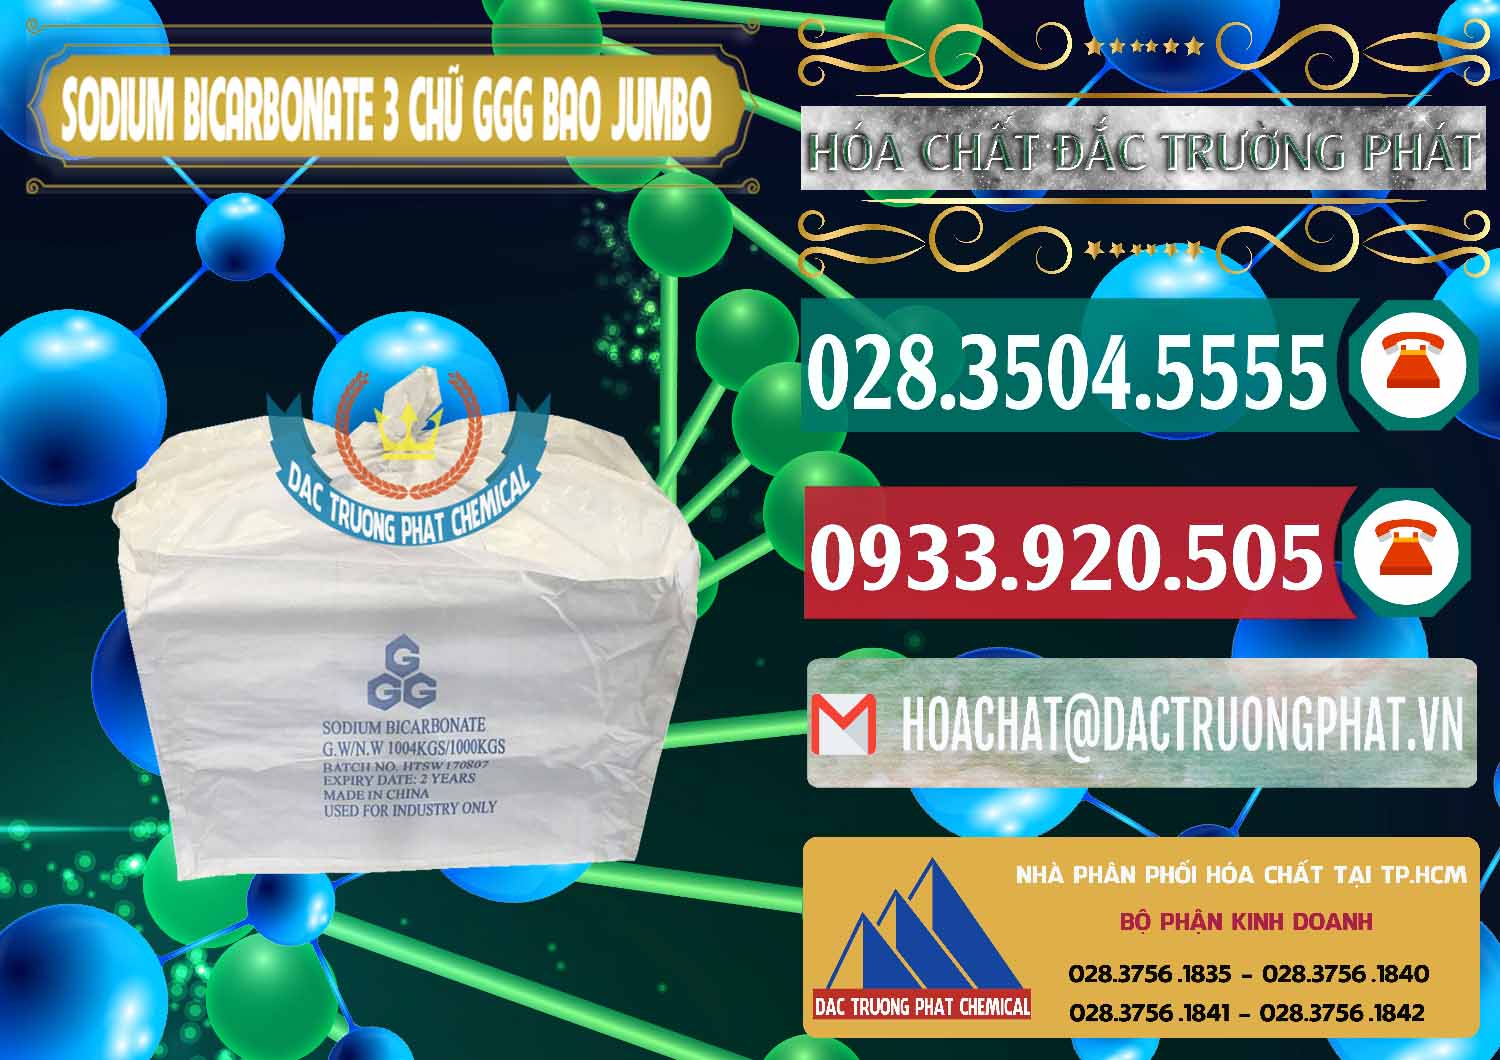 Công ty bán & phân phối Sodium Bicarbonate – Bicar NaHCO3 Food Grade 3 Chữ GGG Bao Jumbo ( Bành ) Trung Quốc China - 0260 - Đơn vị cung cấp và kinh doanh hóa chất tại TP.HCM - muabanhoachat.vn